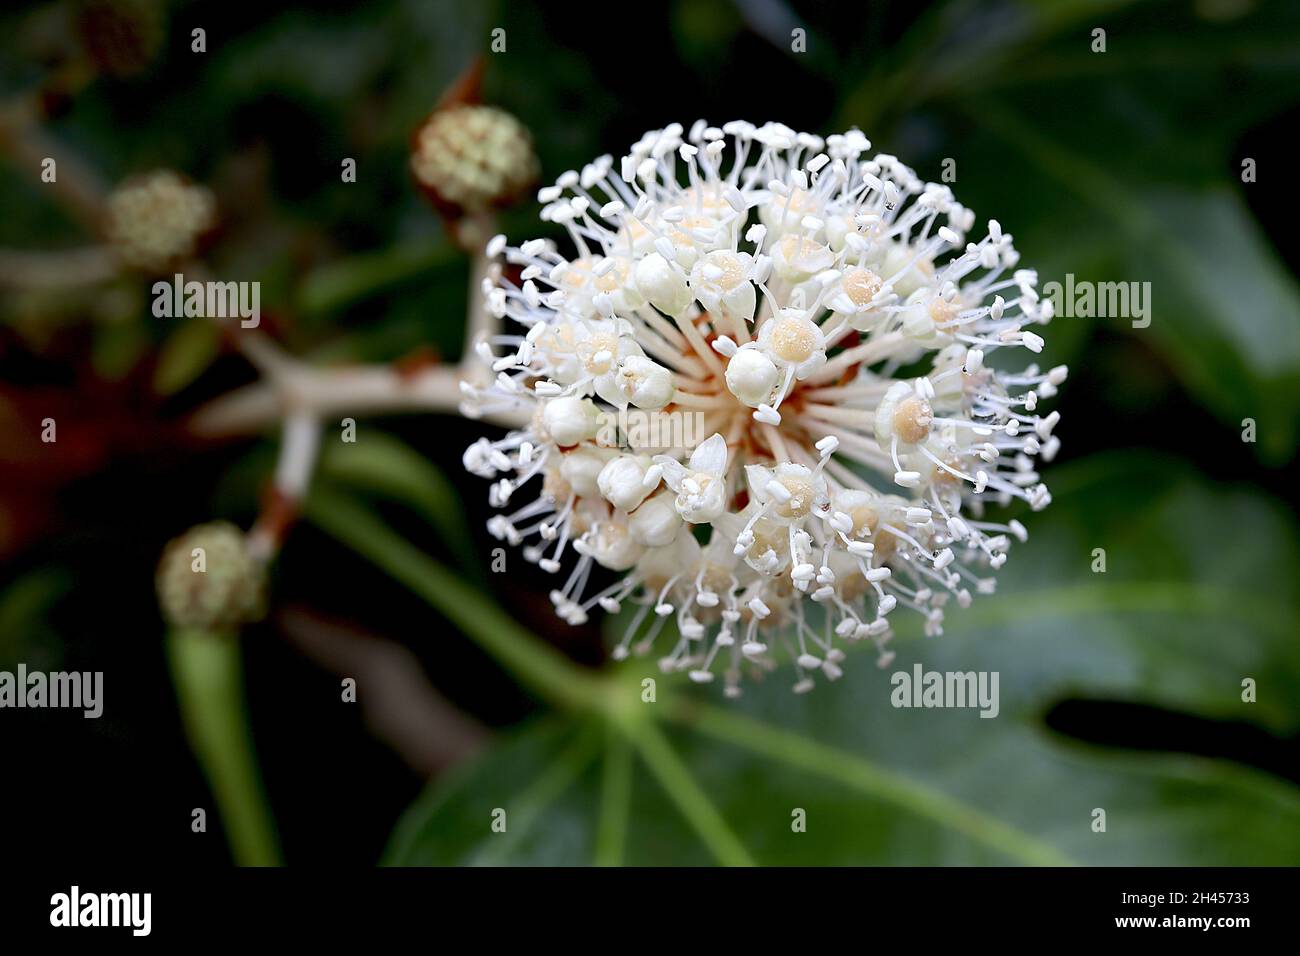 Fatsia japonica Ölpflanze oder Papierpflanze – kugelförmige Dolden aus winzigen weißen Blüten, Oktober, England, Großbritannien Stockfoto